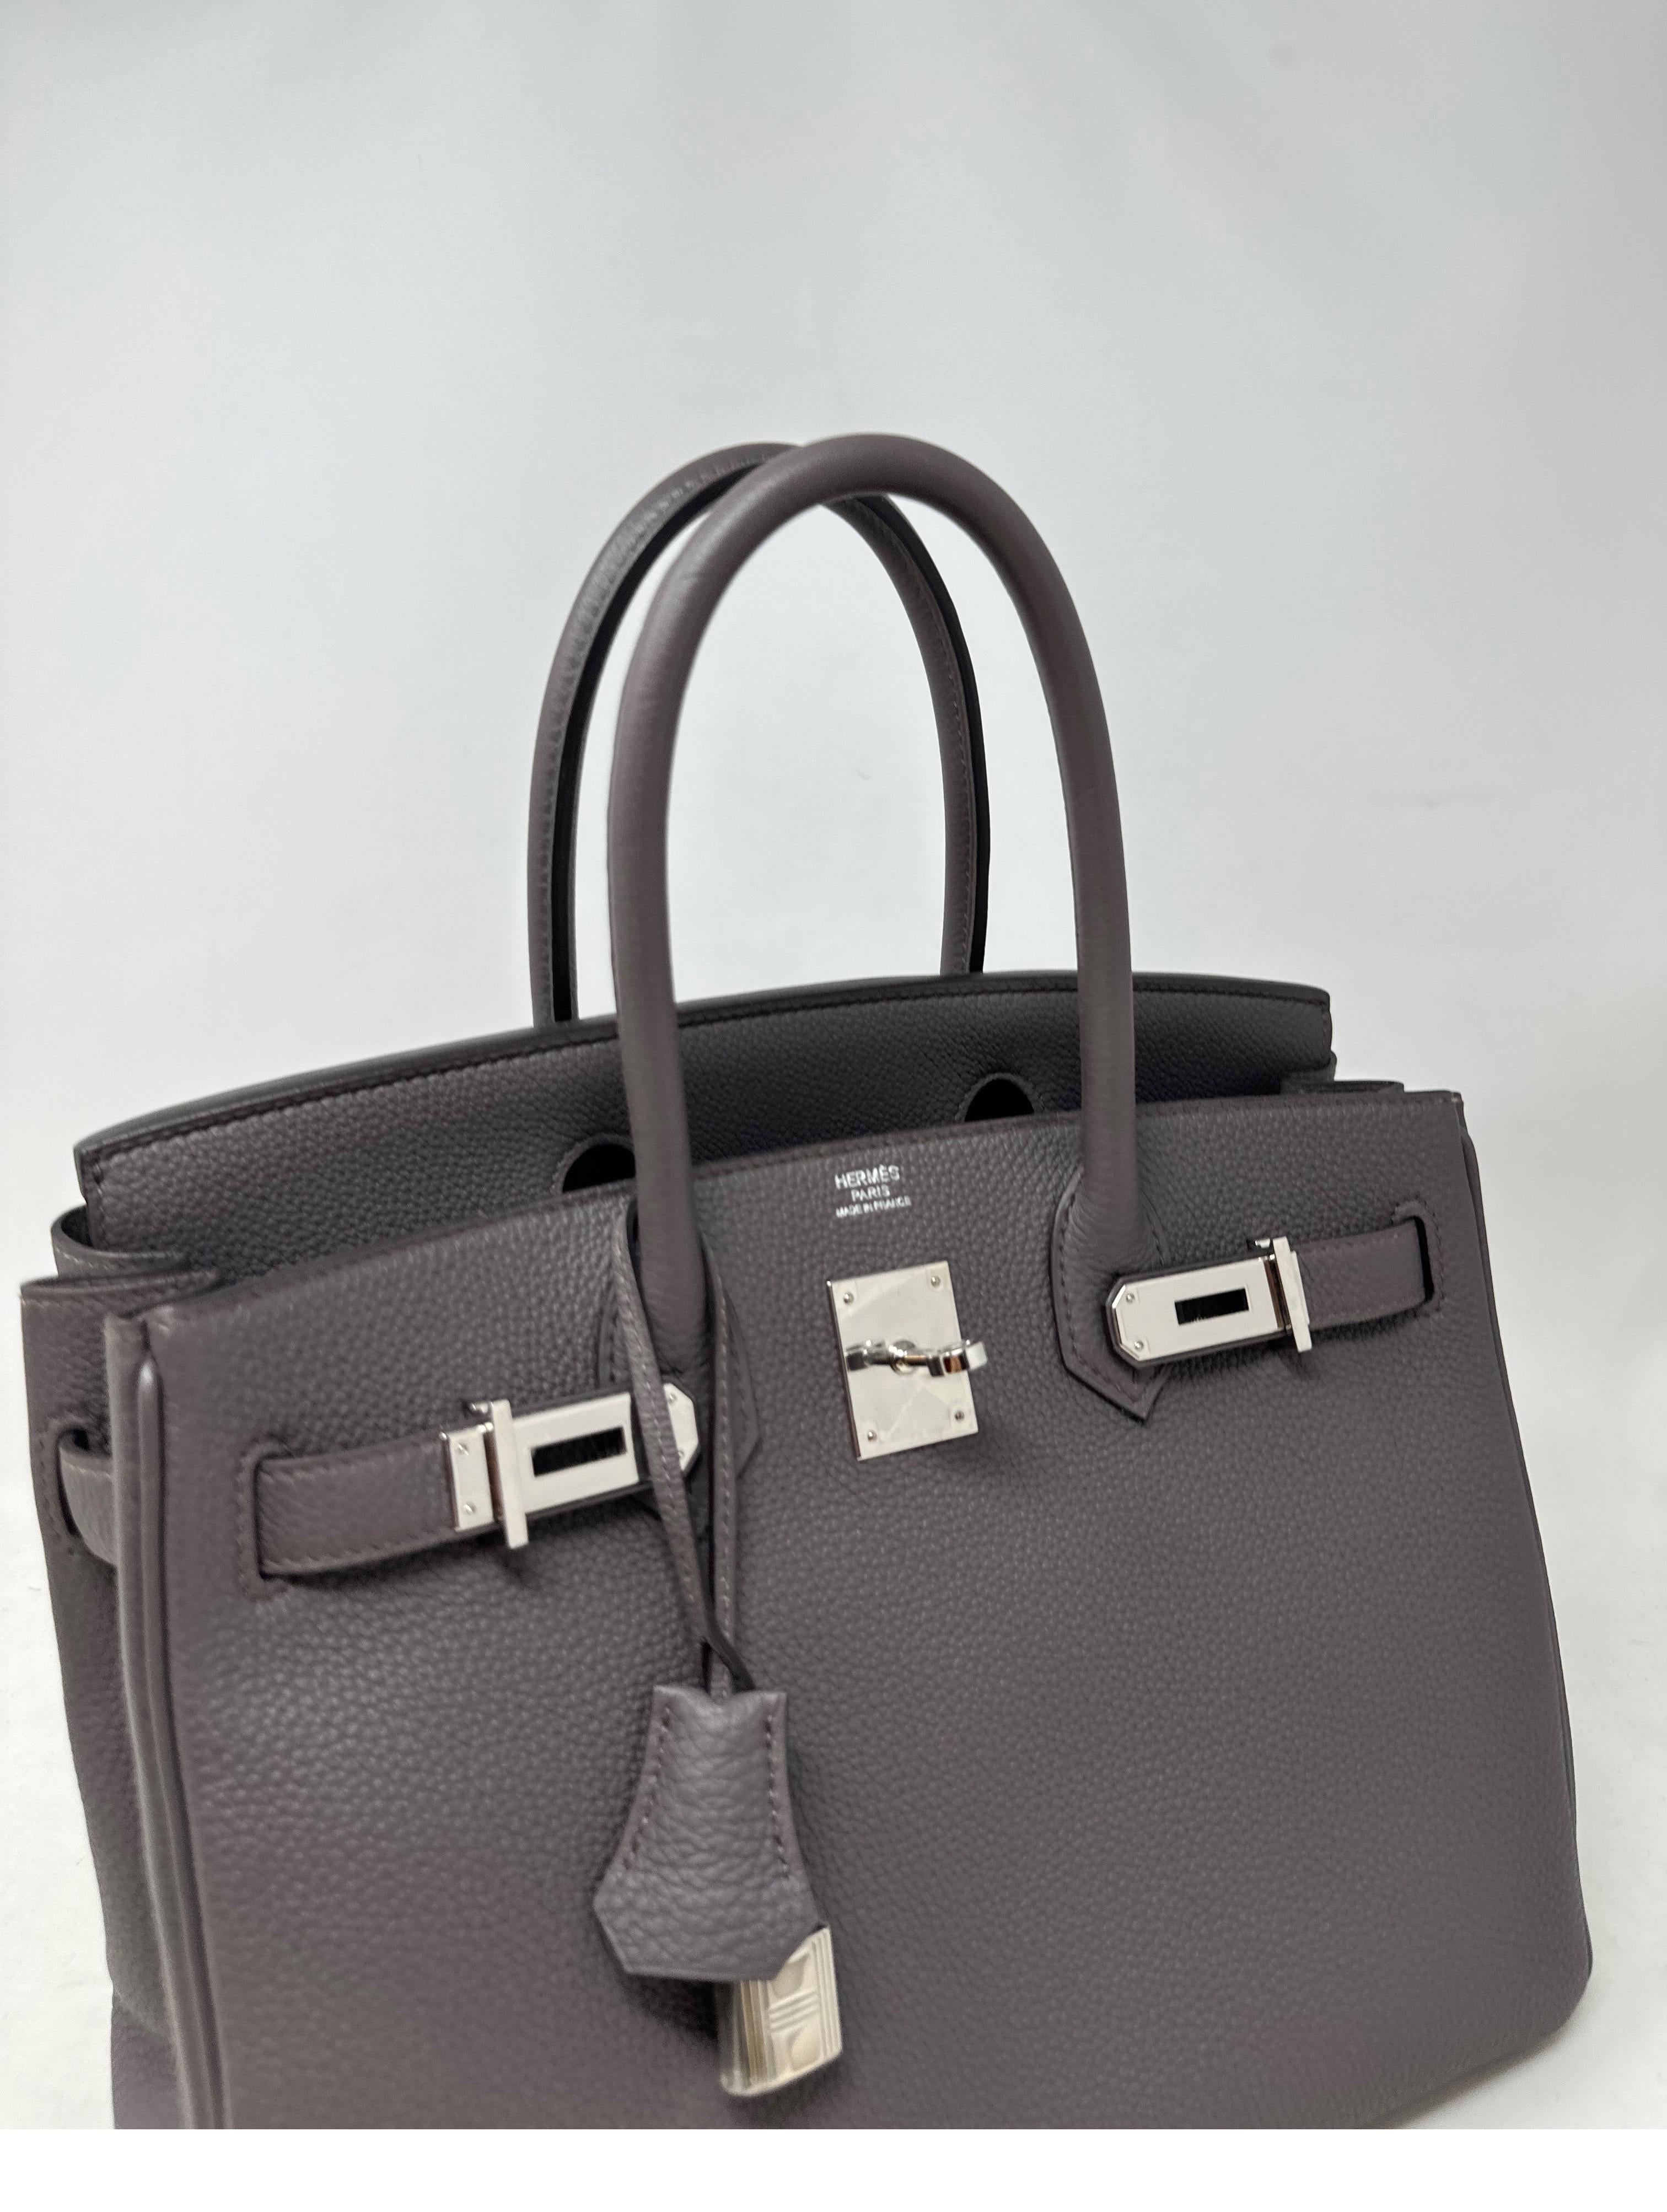 Etain Birkin 30 Tasche von Hermès  für Damen oder Herren